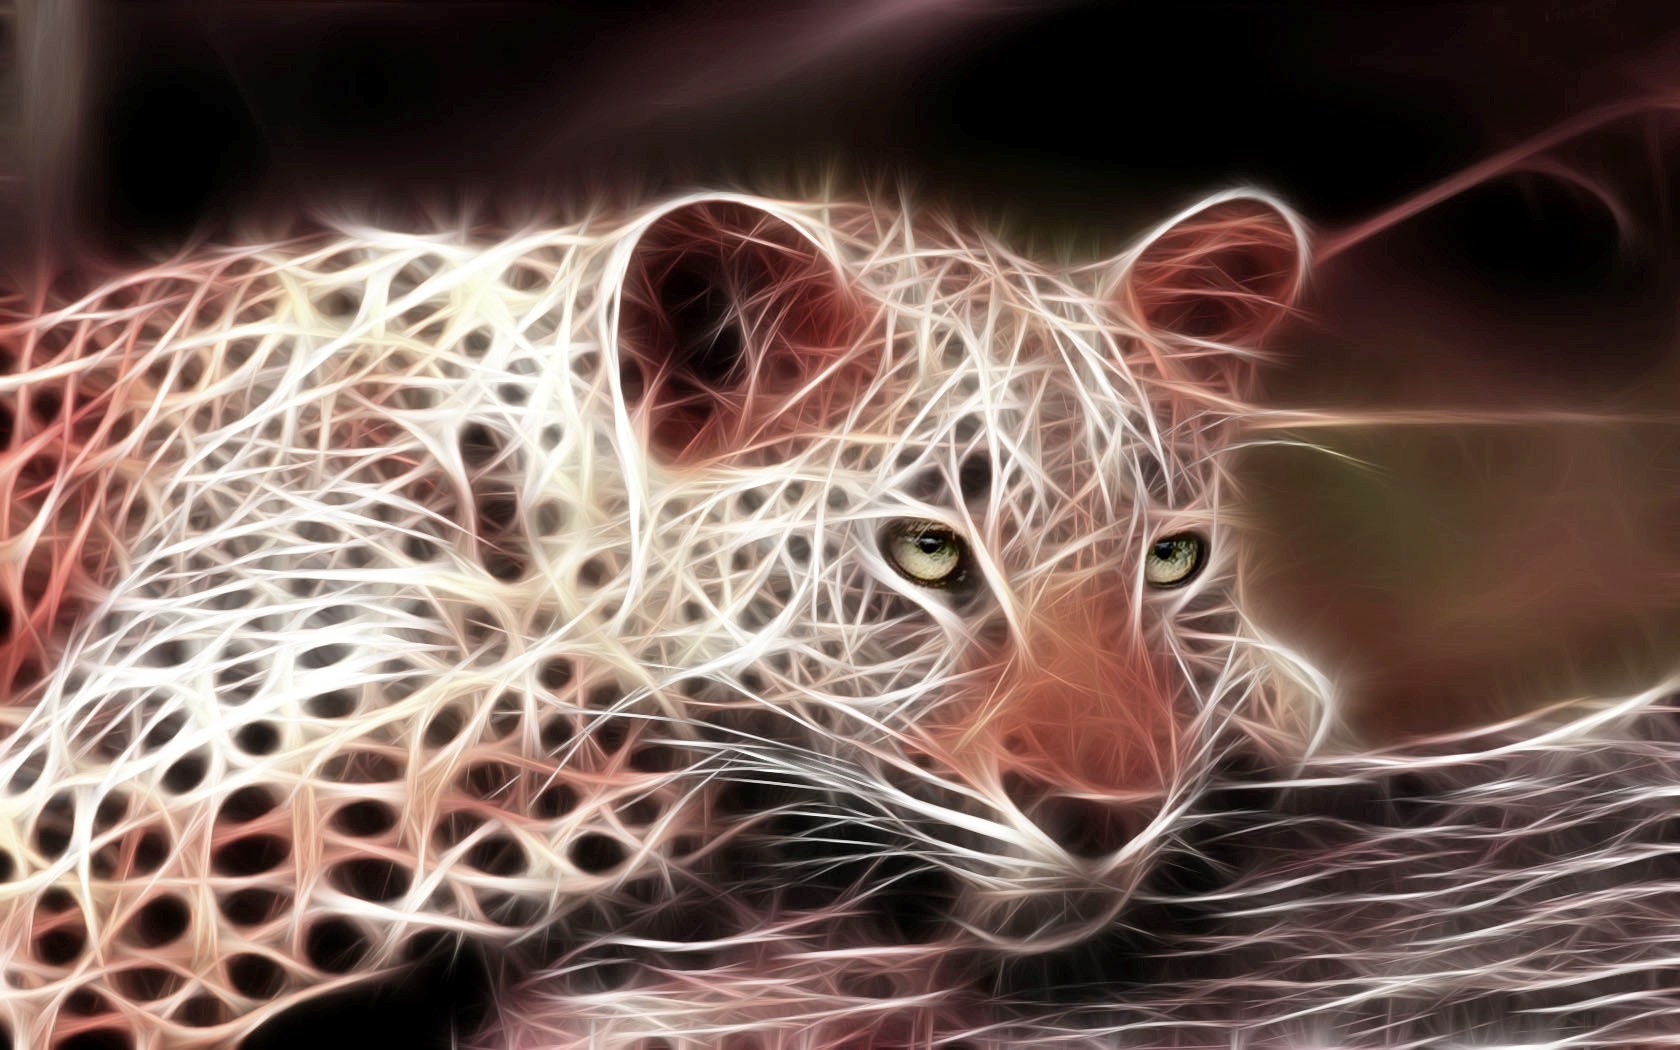 General 1680x1050 leopard CGI Fractalius animals digital art mammals big cats